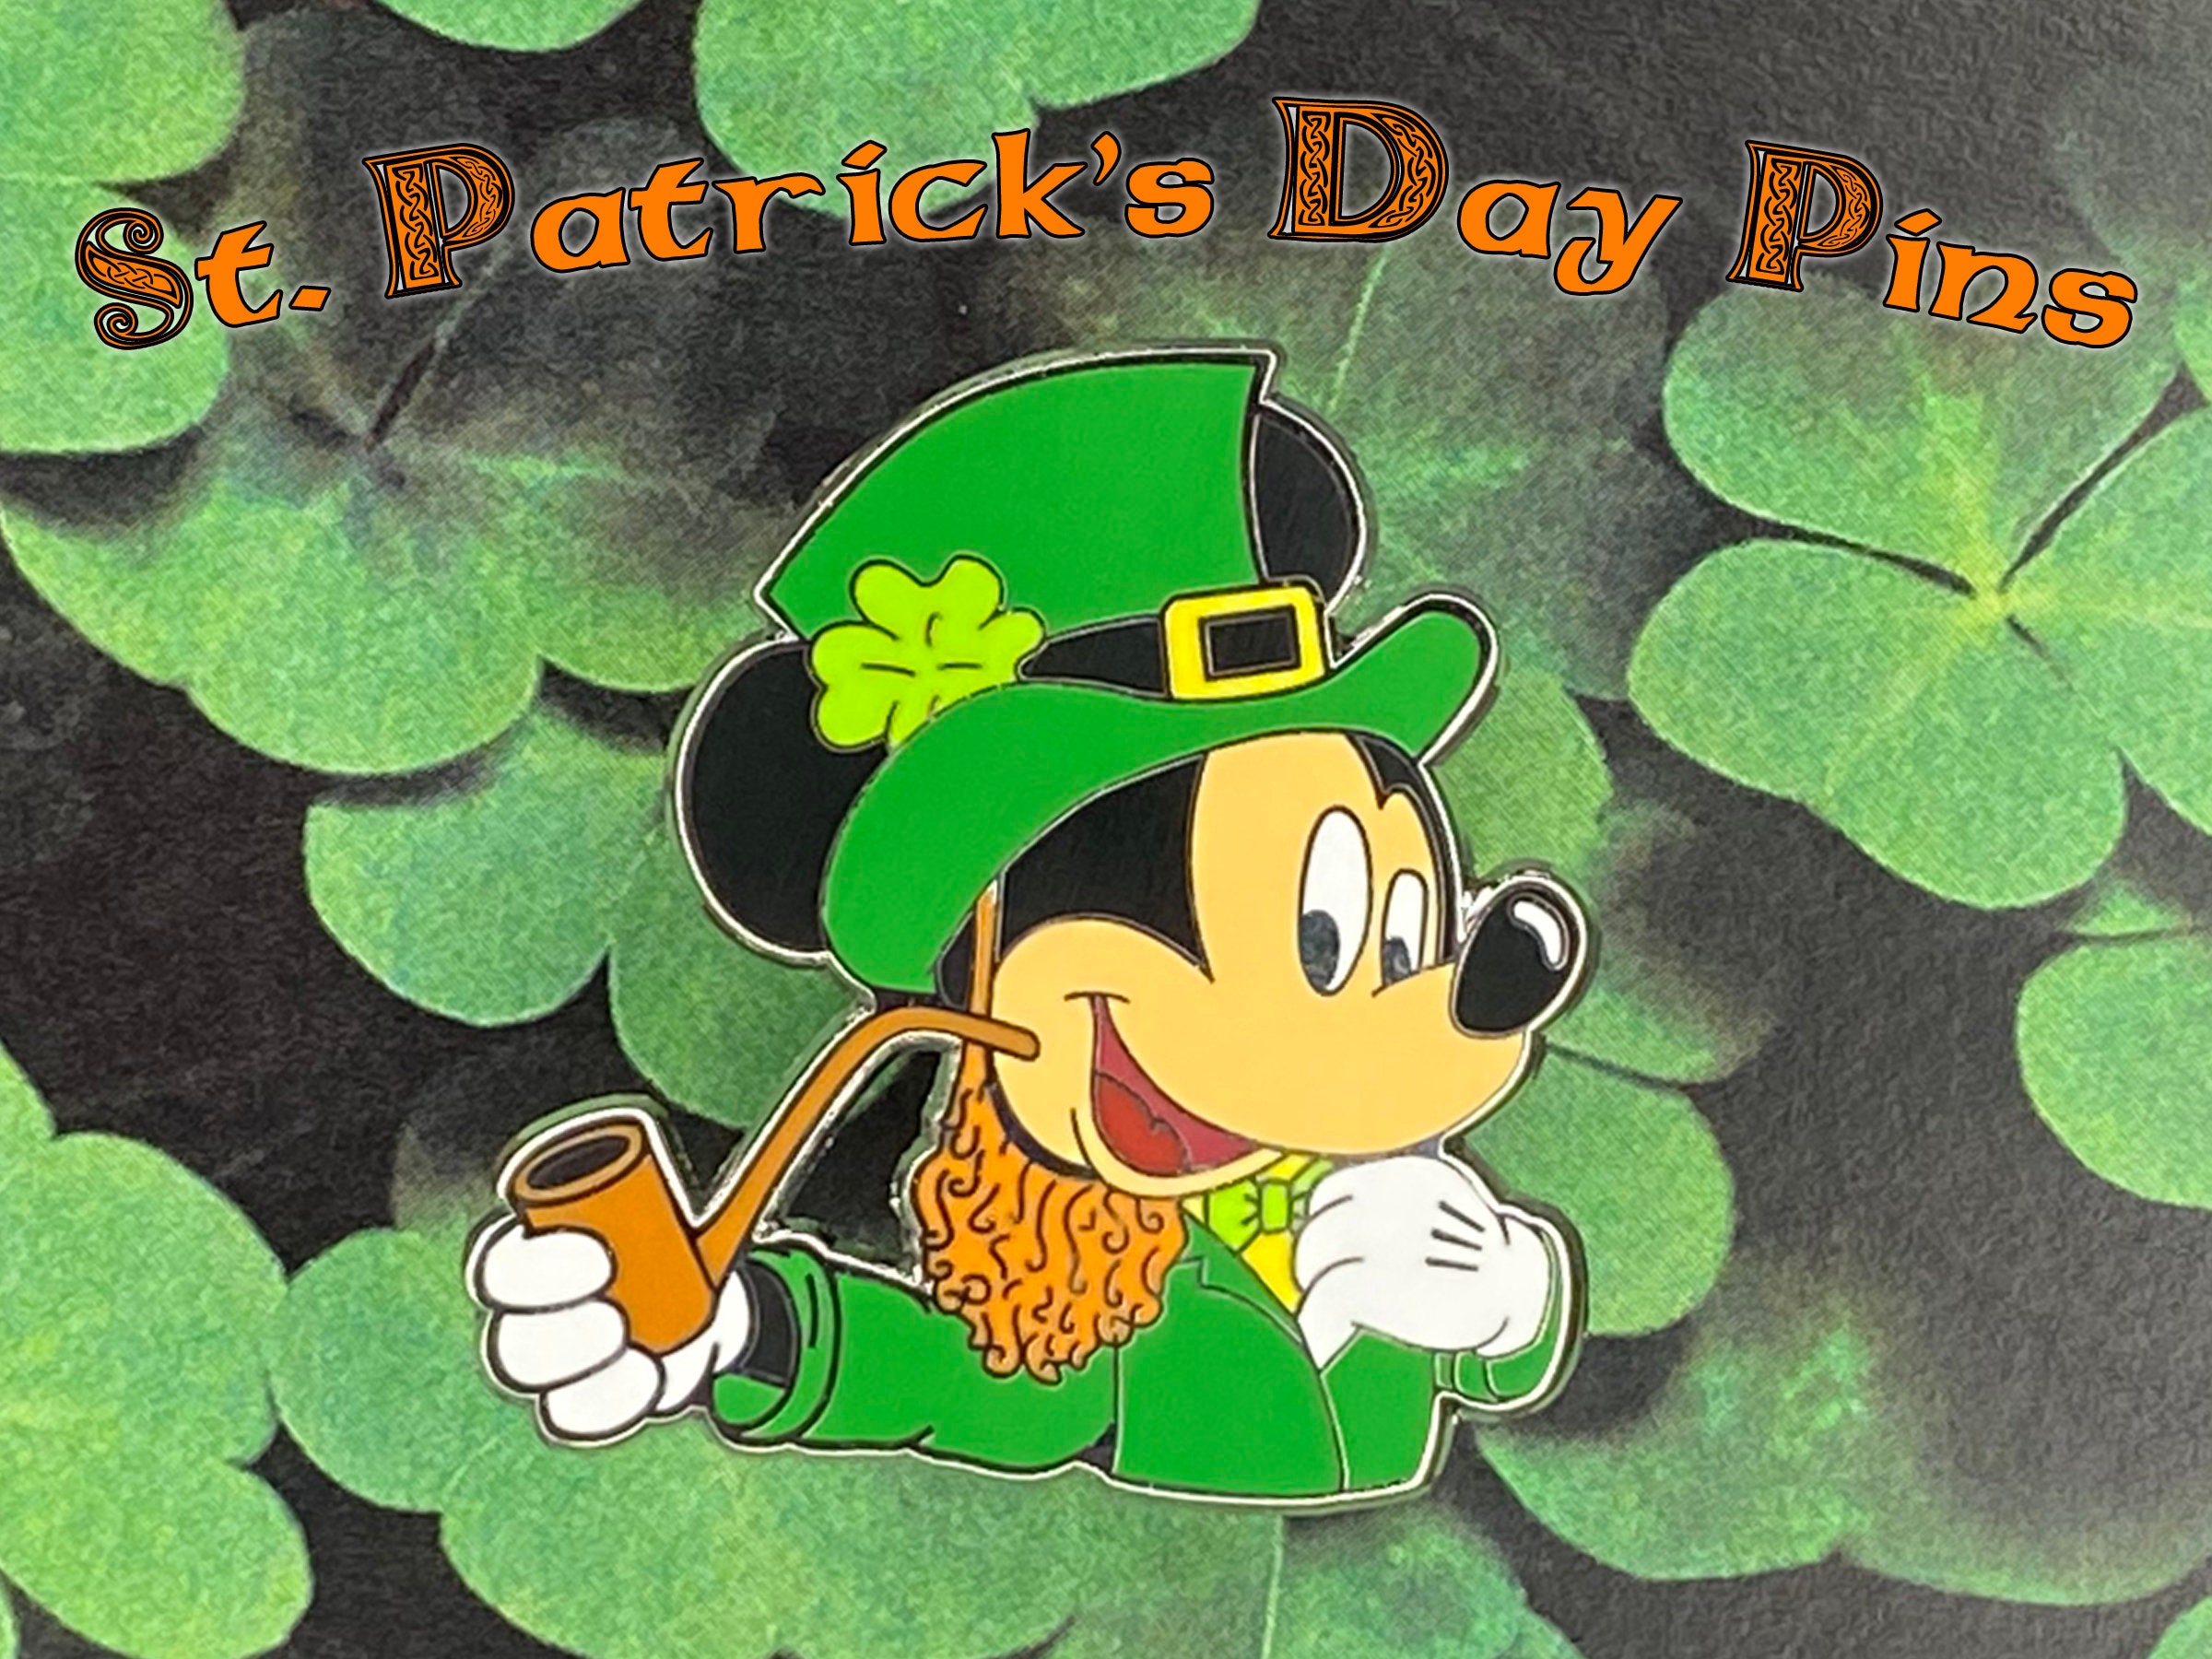 St. Patrick's Day Irish Mickey Mouse Disney Fantasy Pin